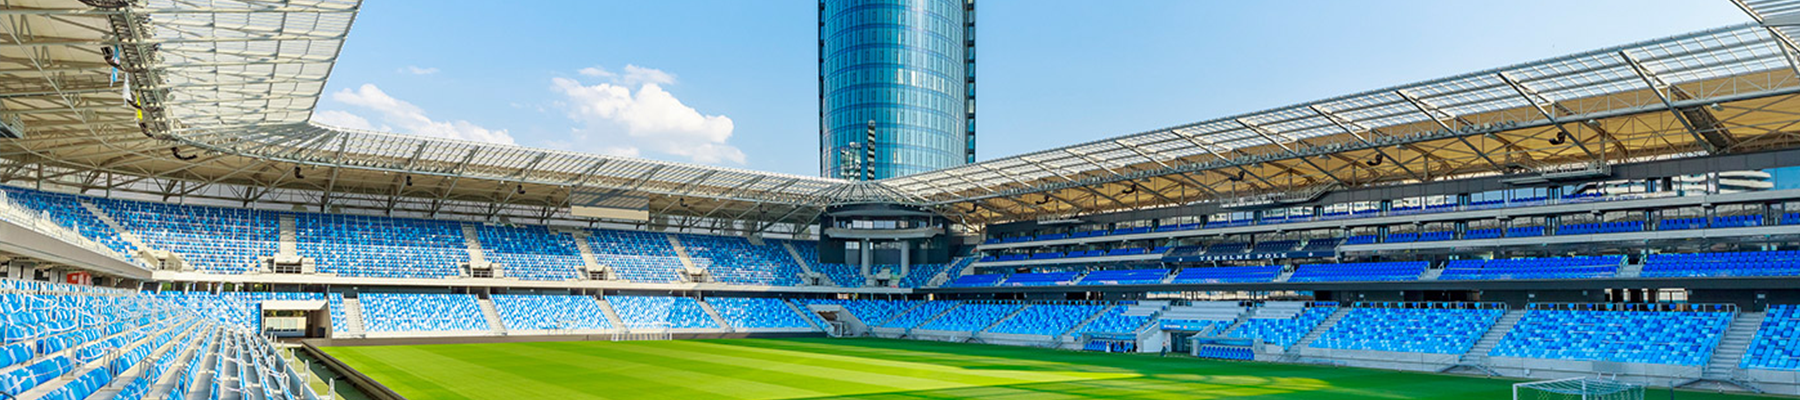 Národný futbalový štadión Fullwidth Image